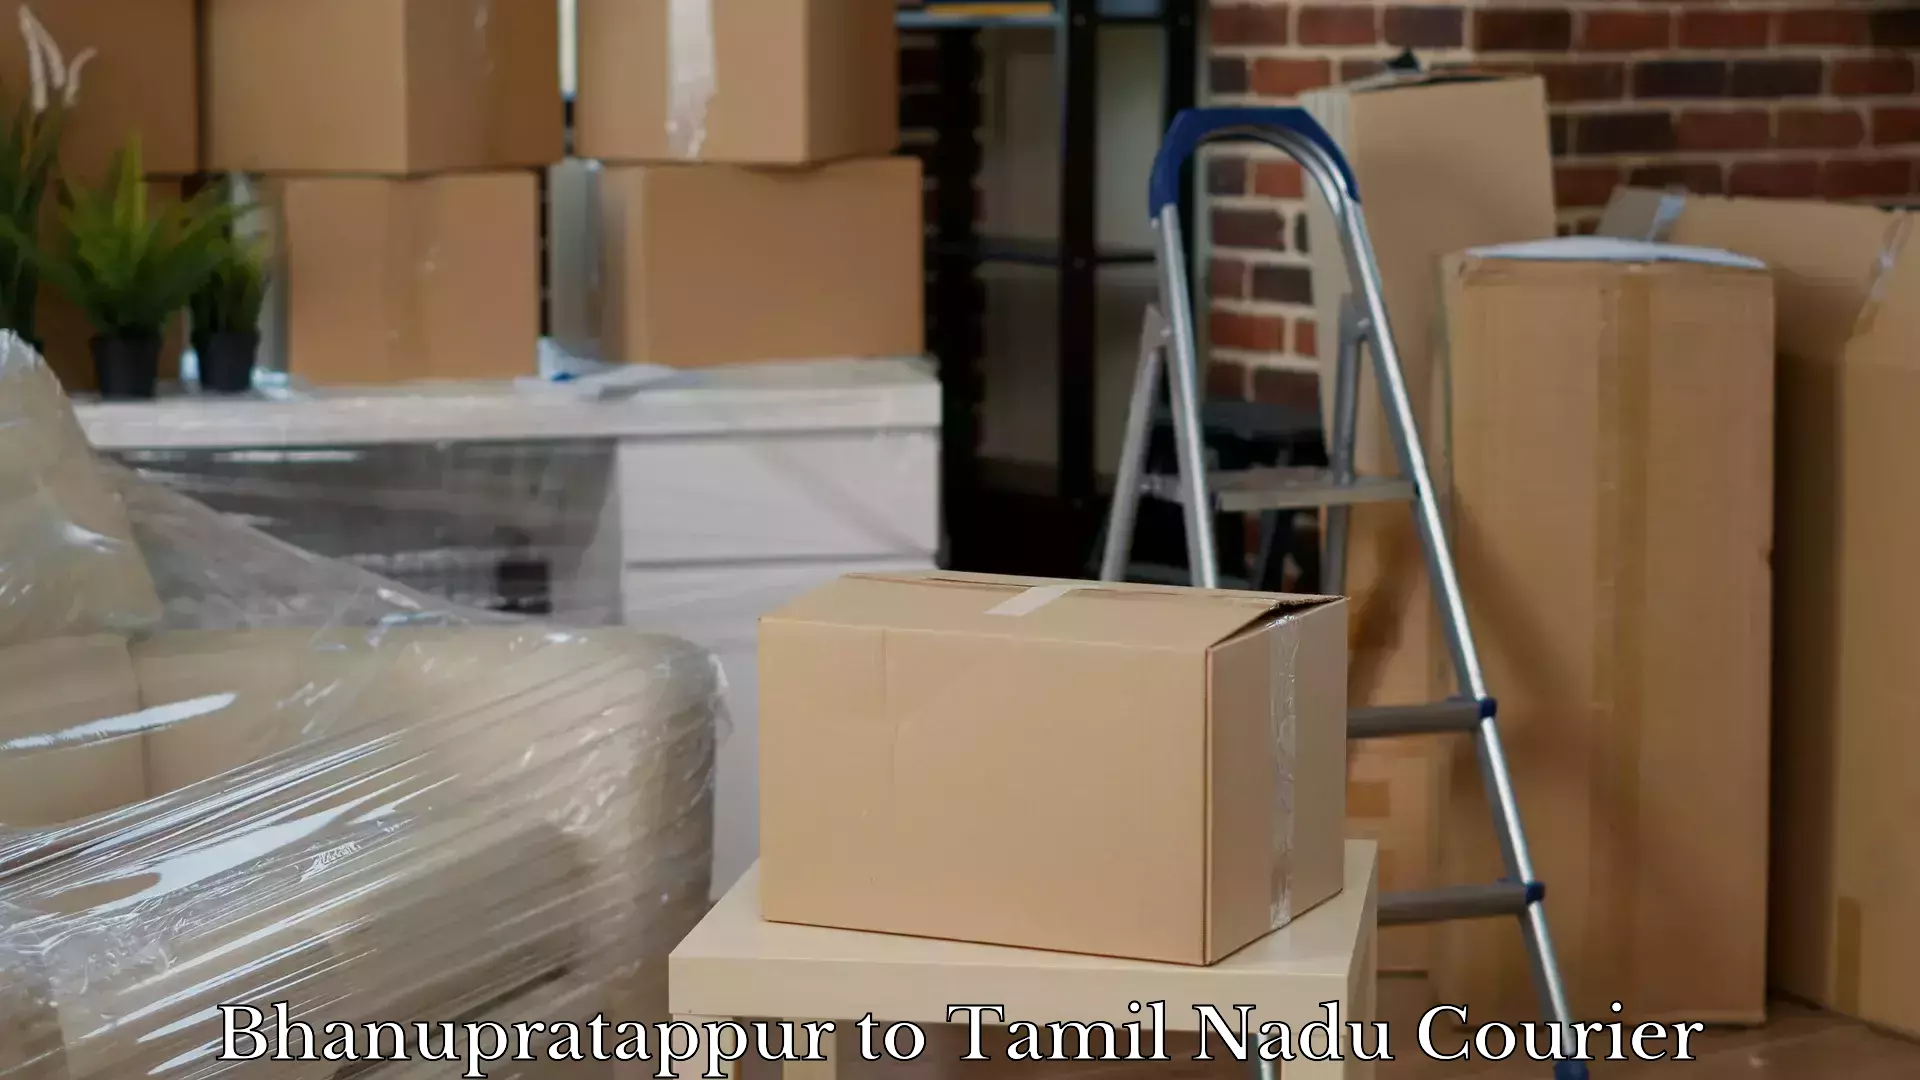 Luggage shipment specialists Bhanupratappur to Tirukalukundram